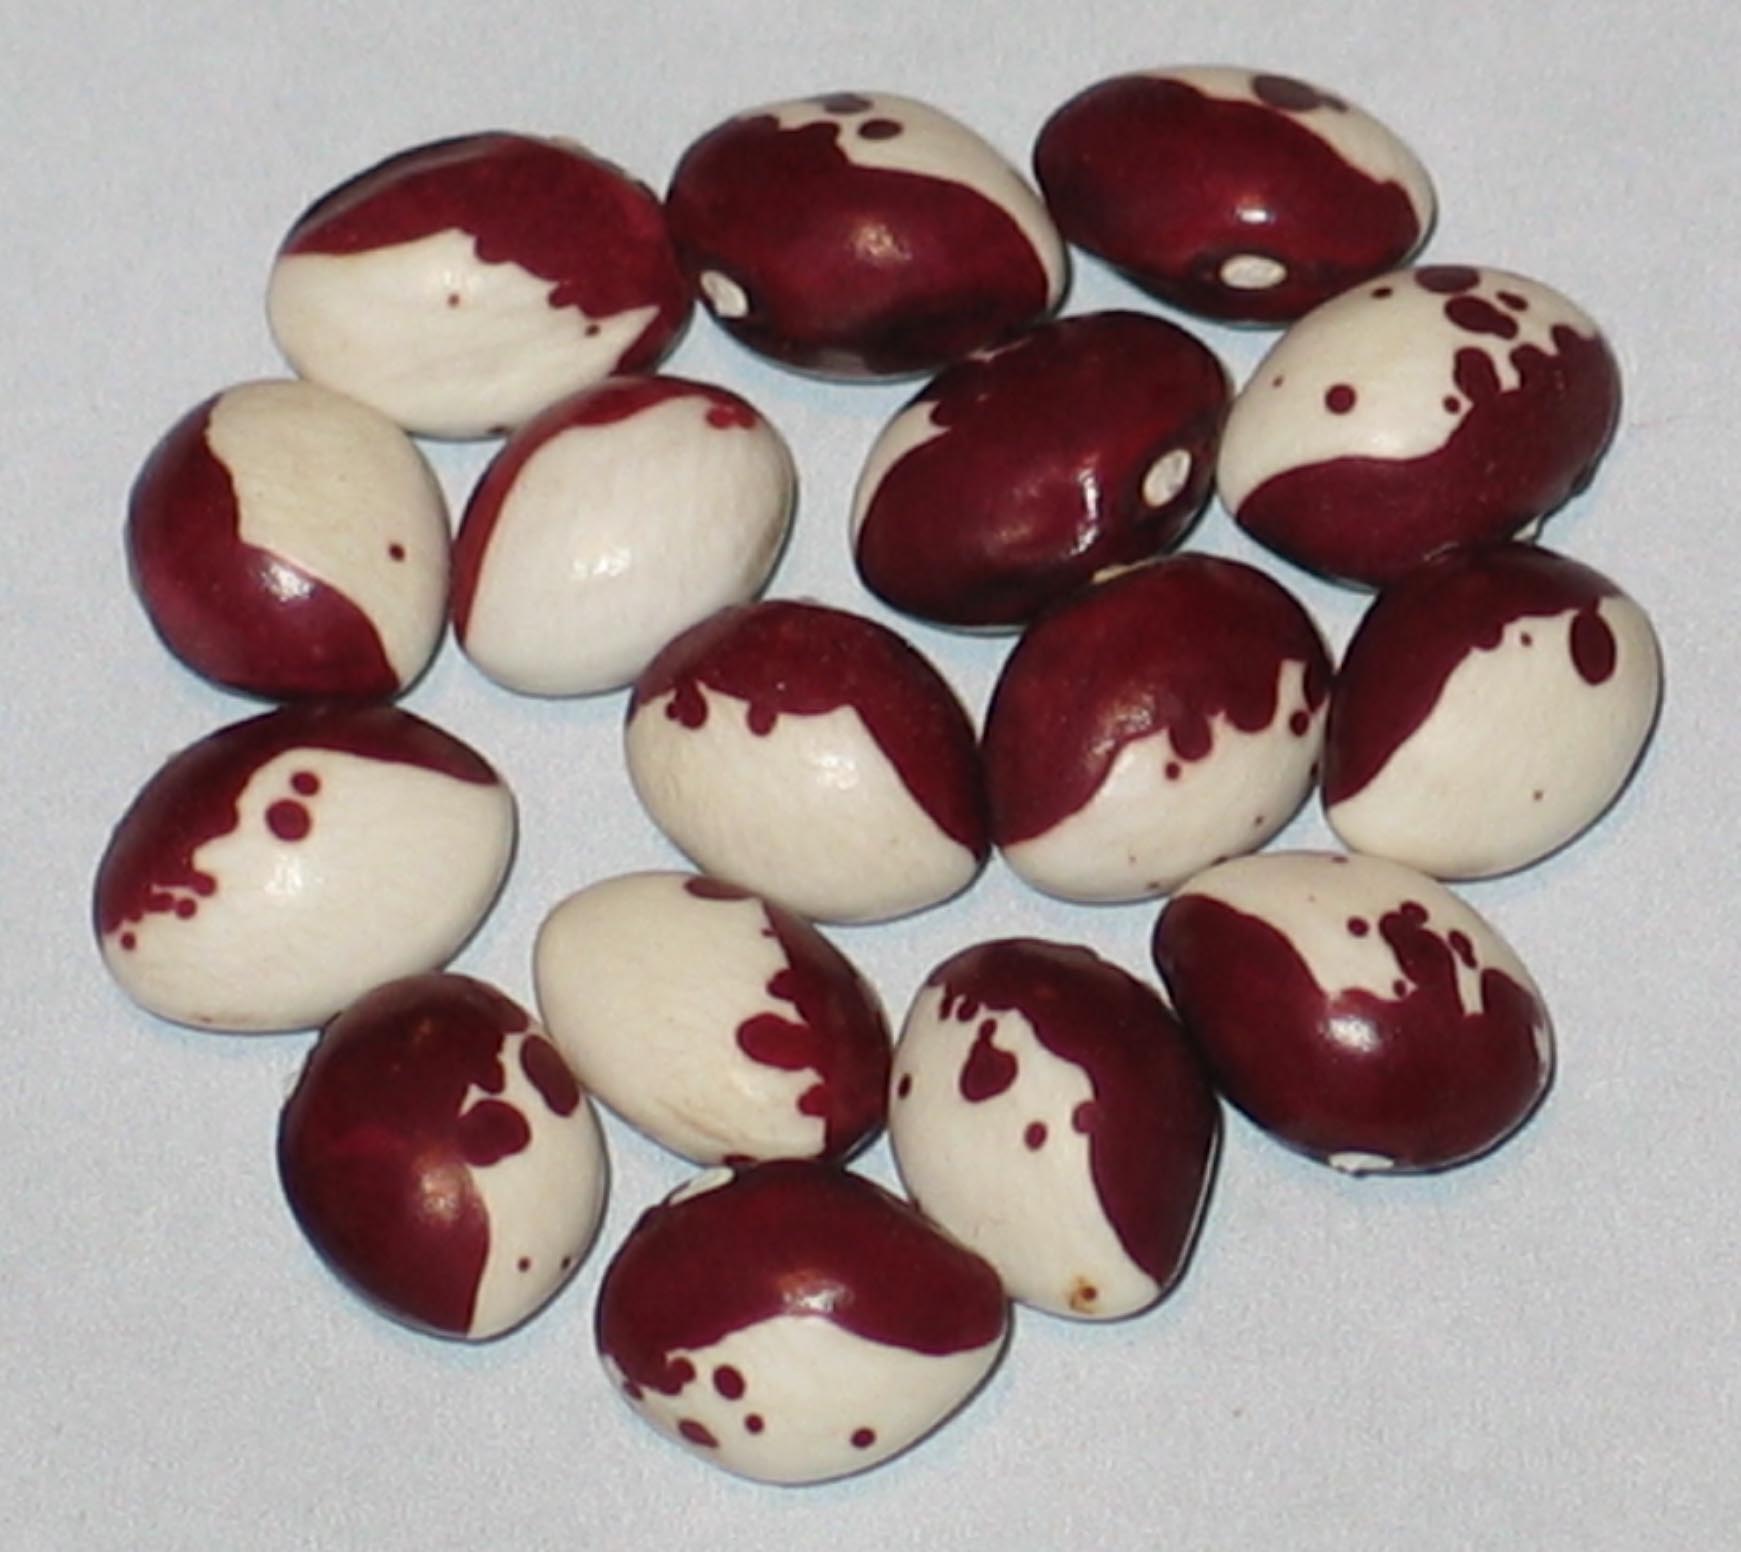 image of Monachelle De Trevio beans